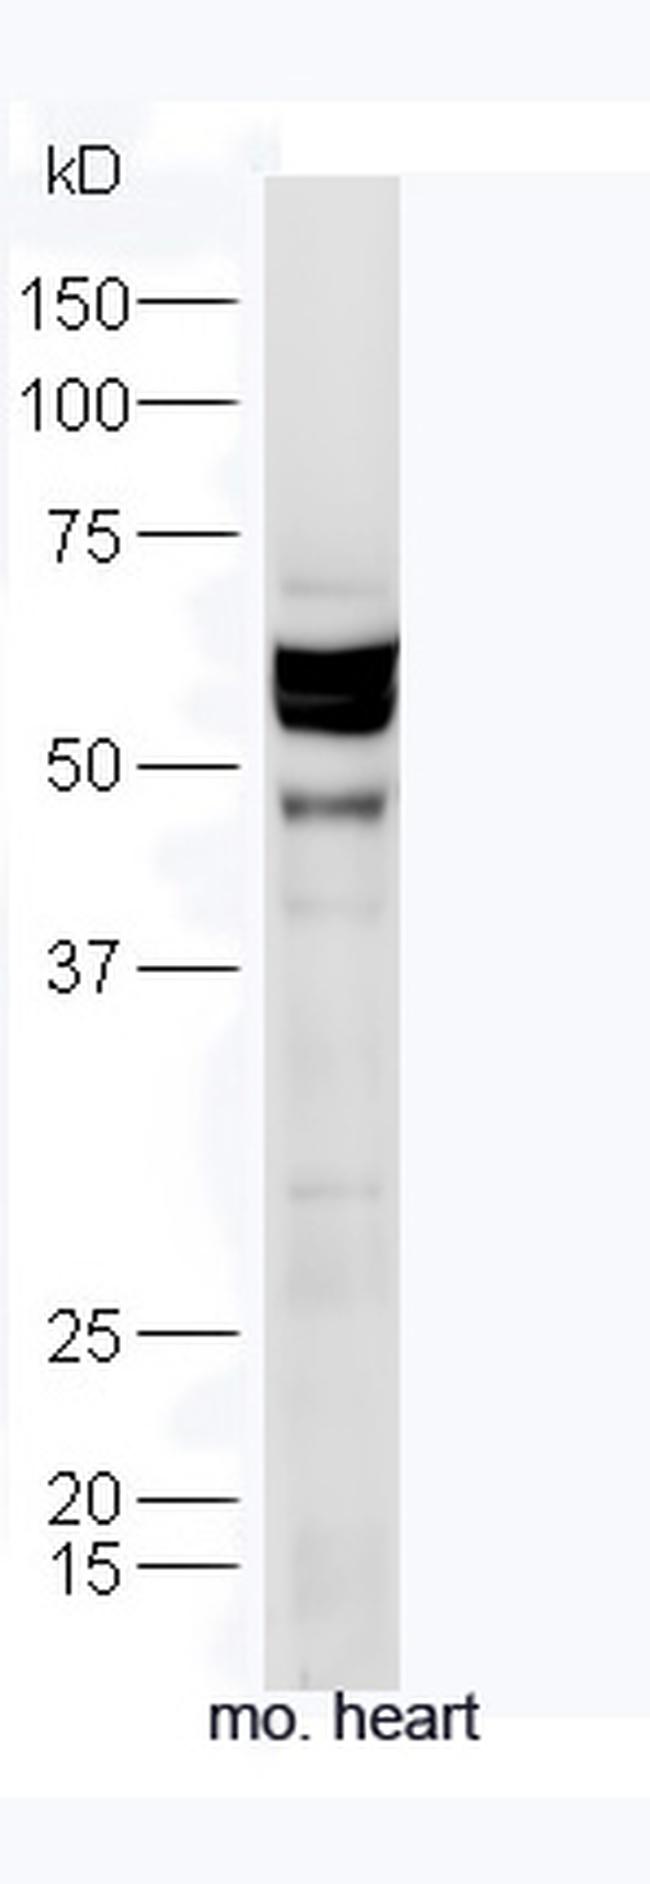 TXA2R Antibody in Western Blot (WB)